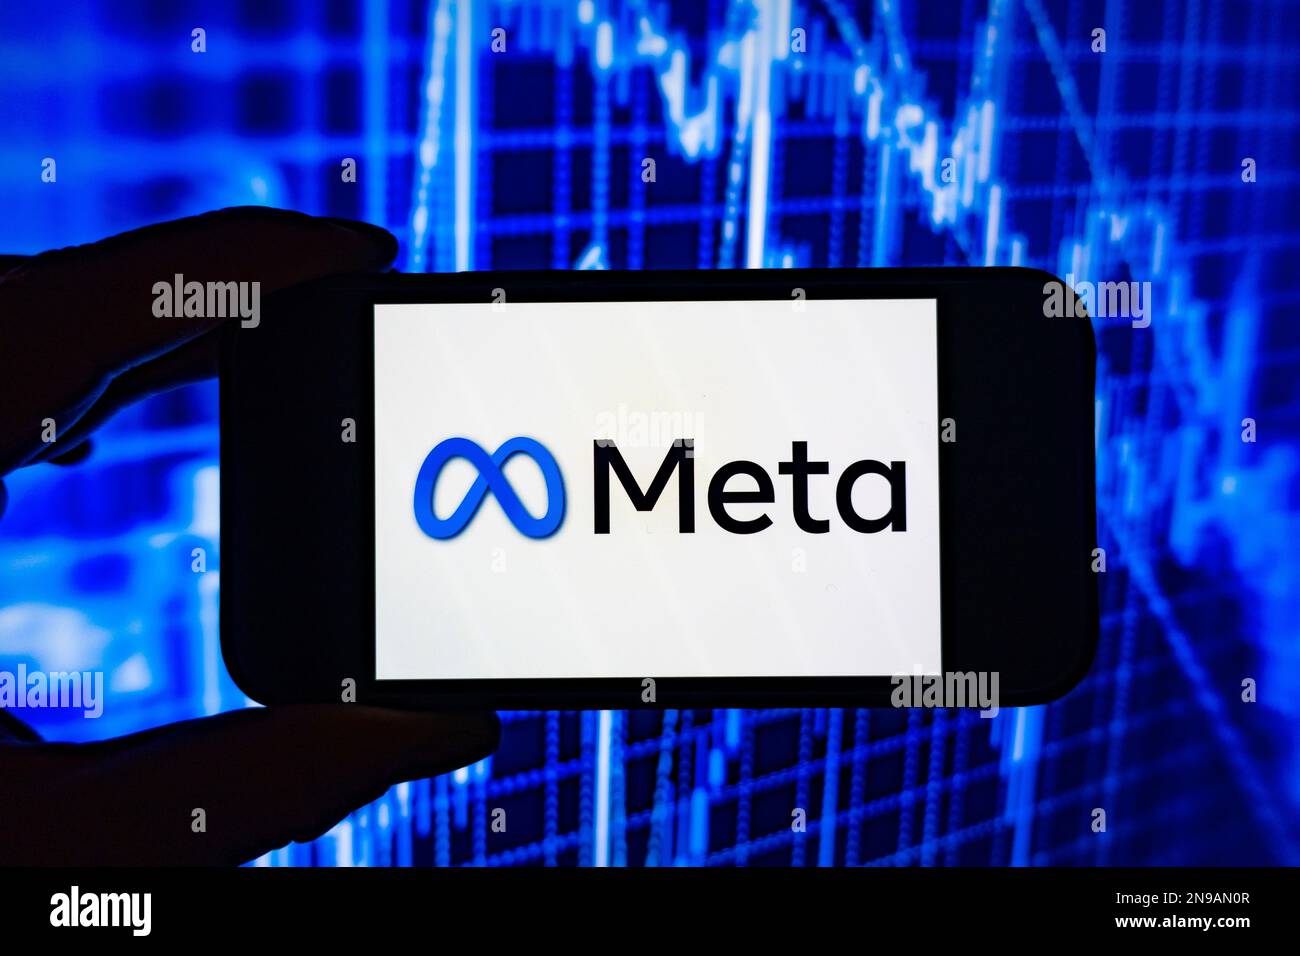 Immagine composita digitale del logo Facebook Meta su carta elettronica. Foto Stock